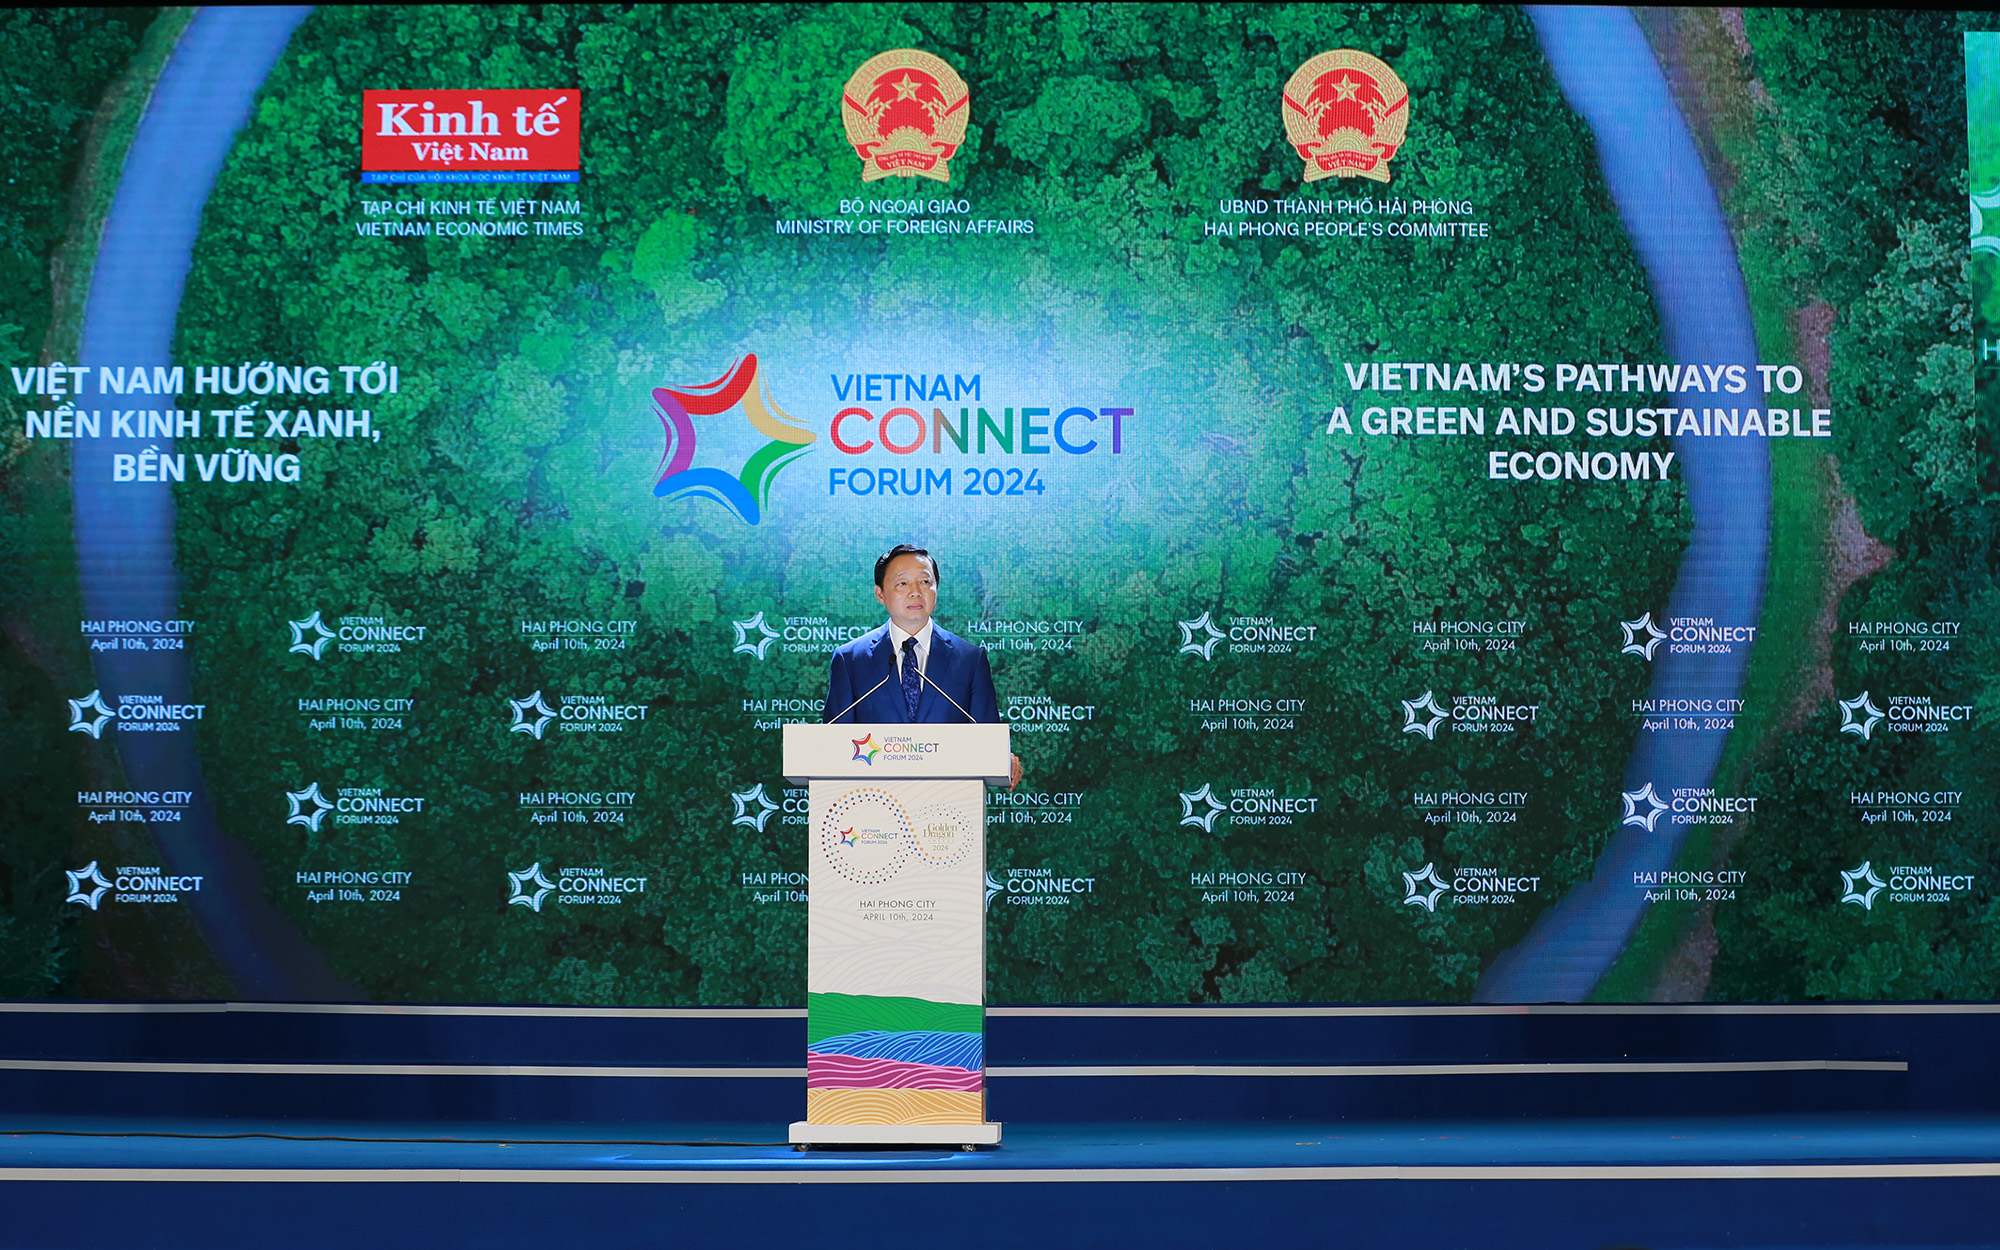 Phó Thủ tướng gửi thông điệp kết nối, chuyển đổi xanh tới các doanh nghiệp